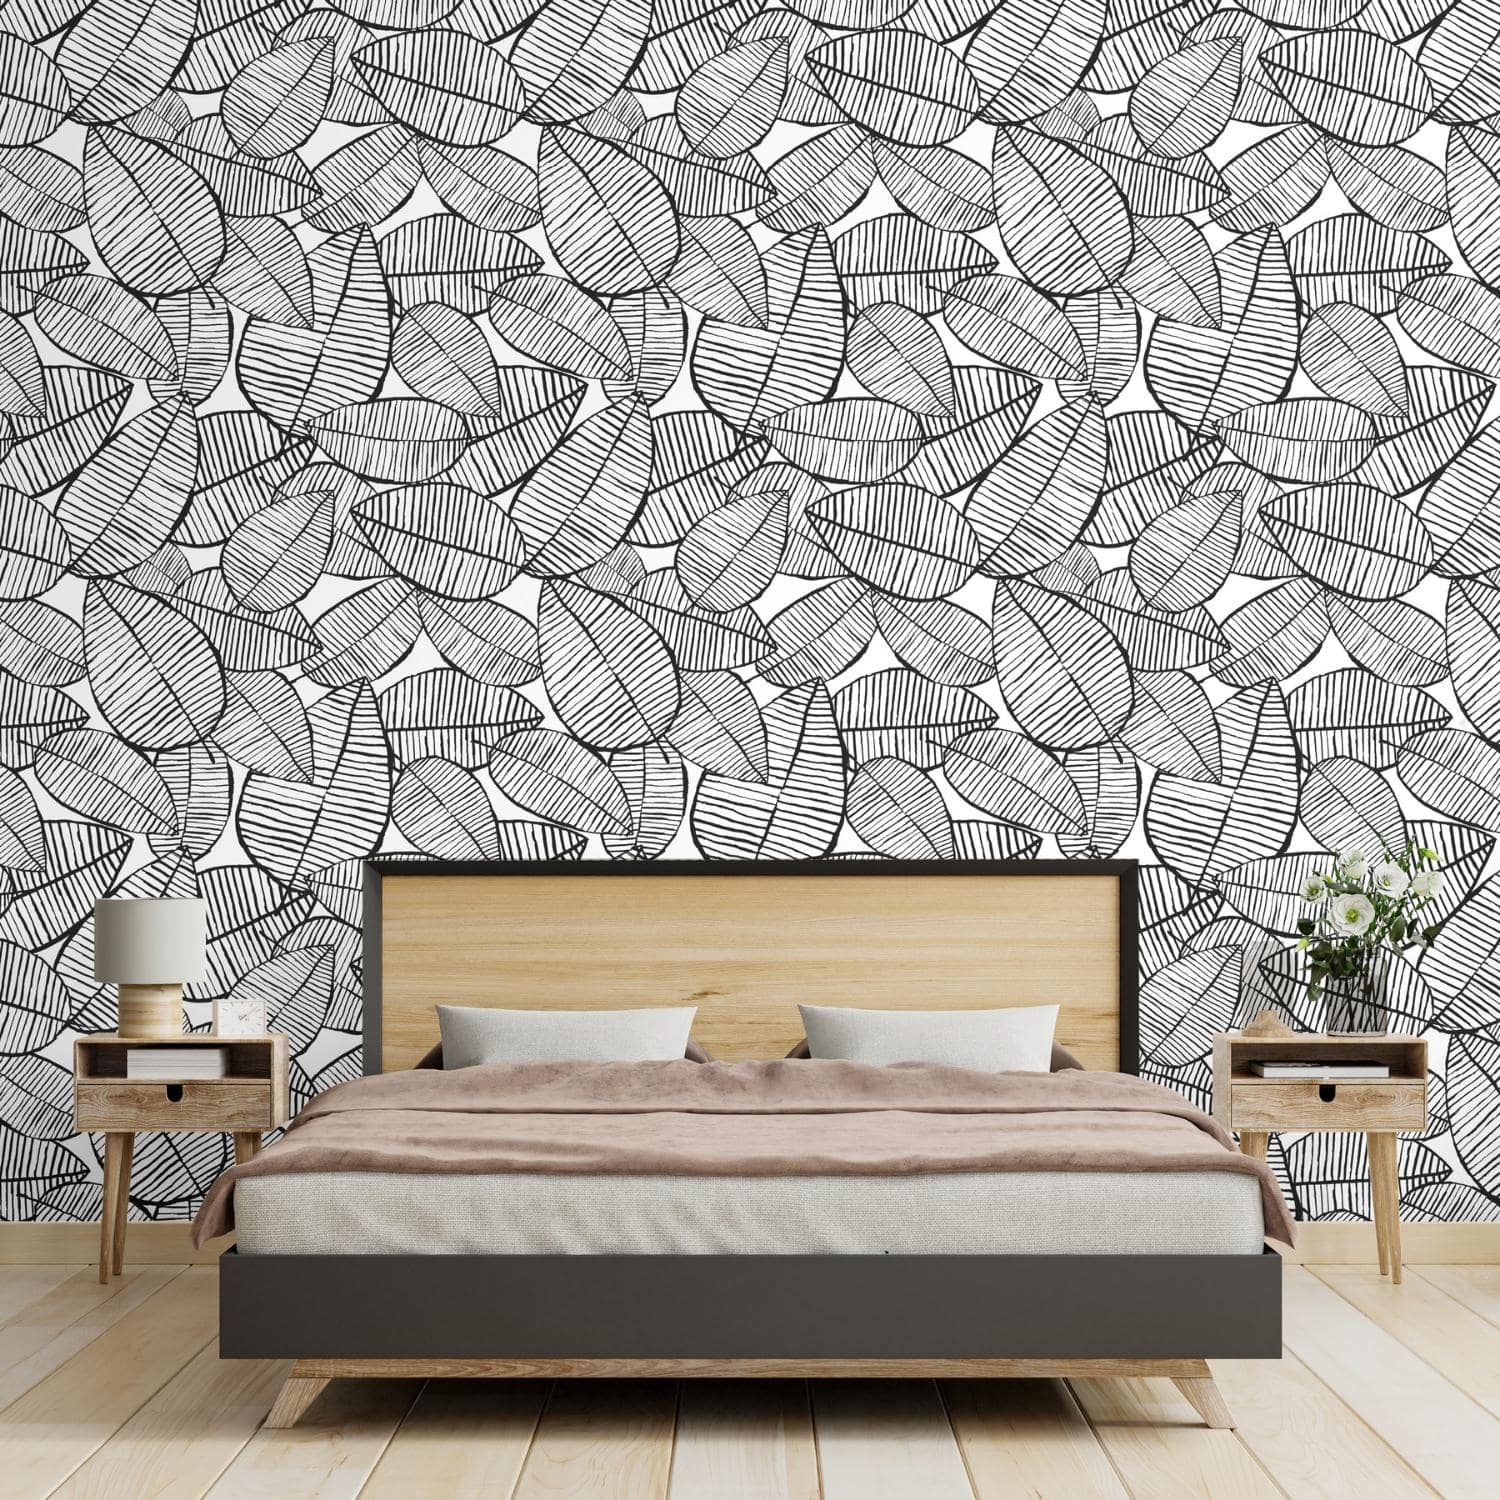 PP17-papier-peint-adhesif-decoratif-revetement-vinyle-motifs-nature-feuilles-croquis-renovation-meuble-mur-6